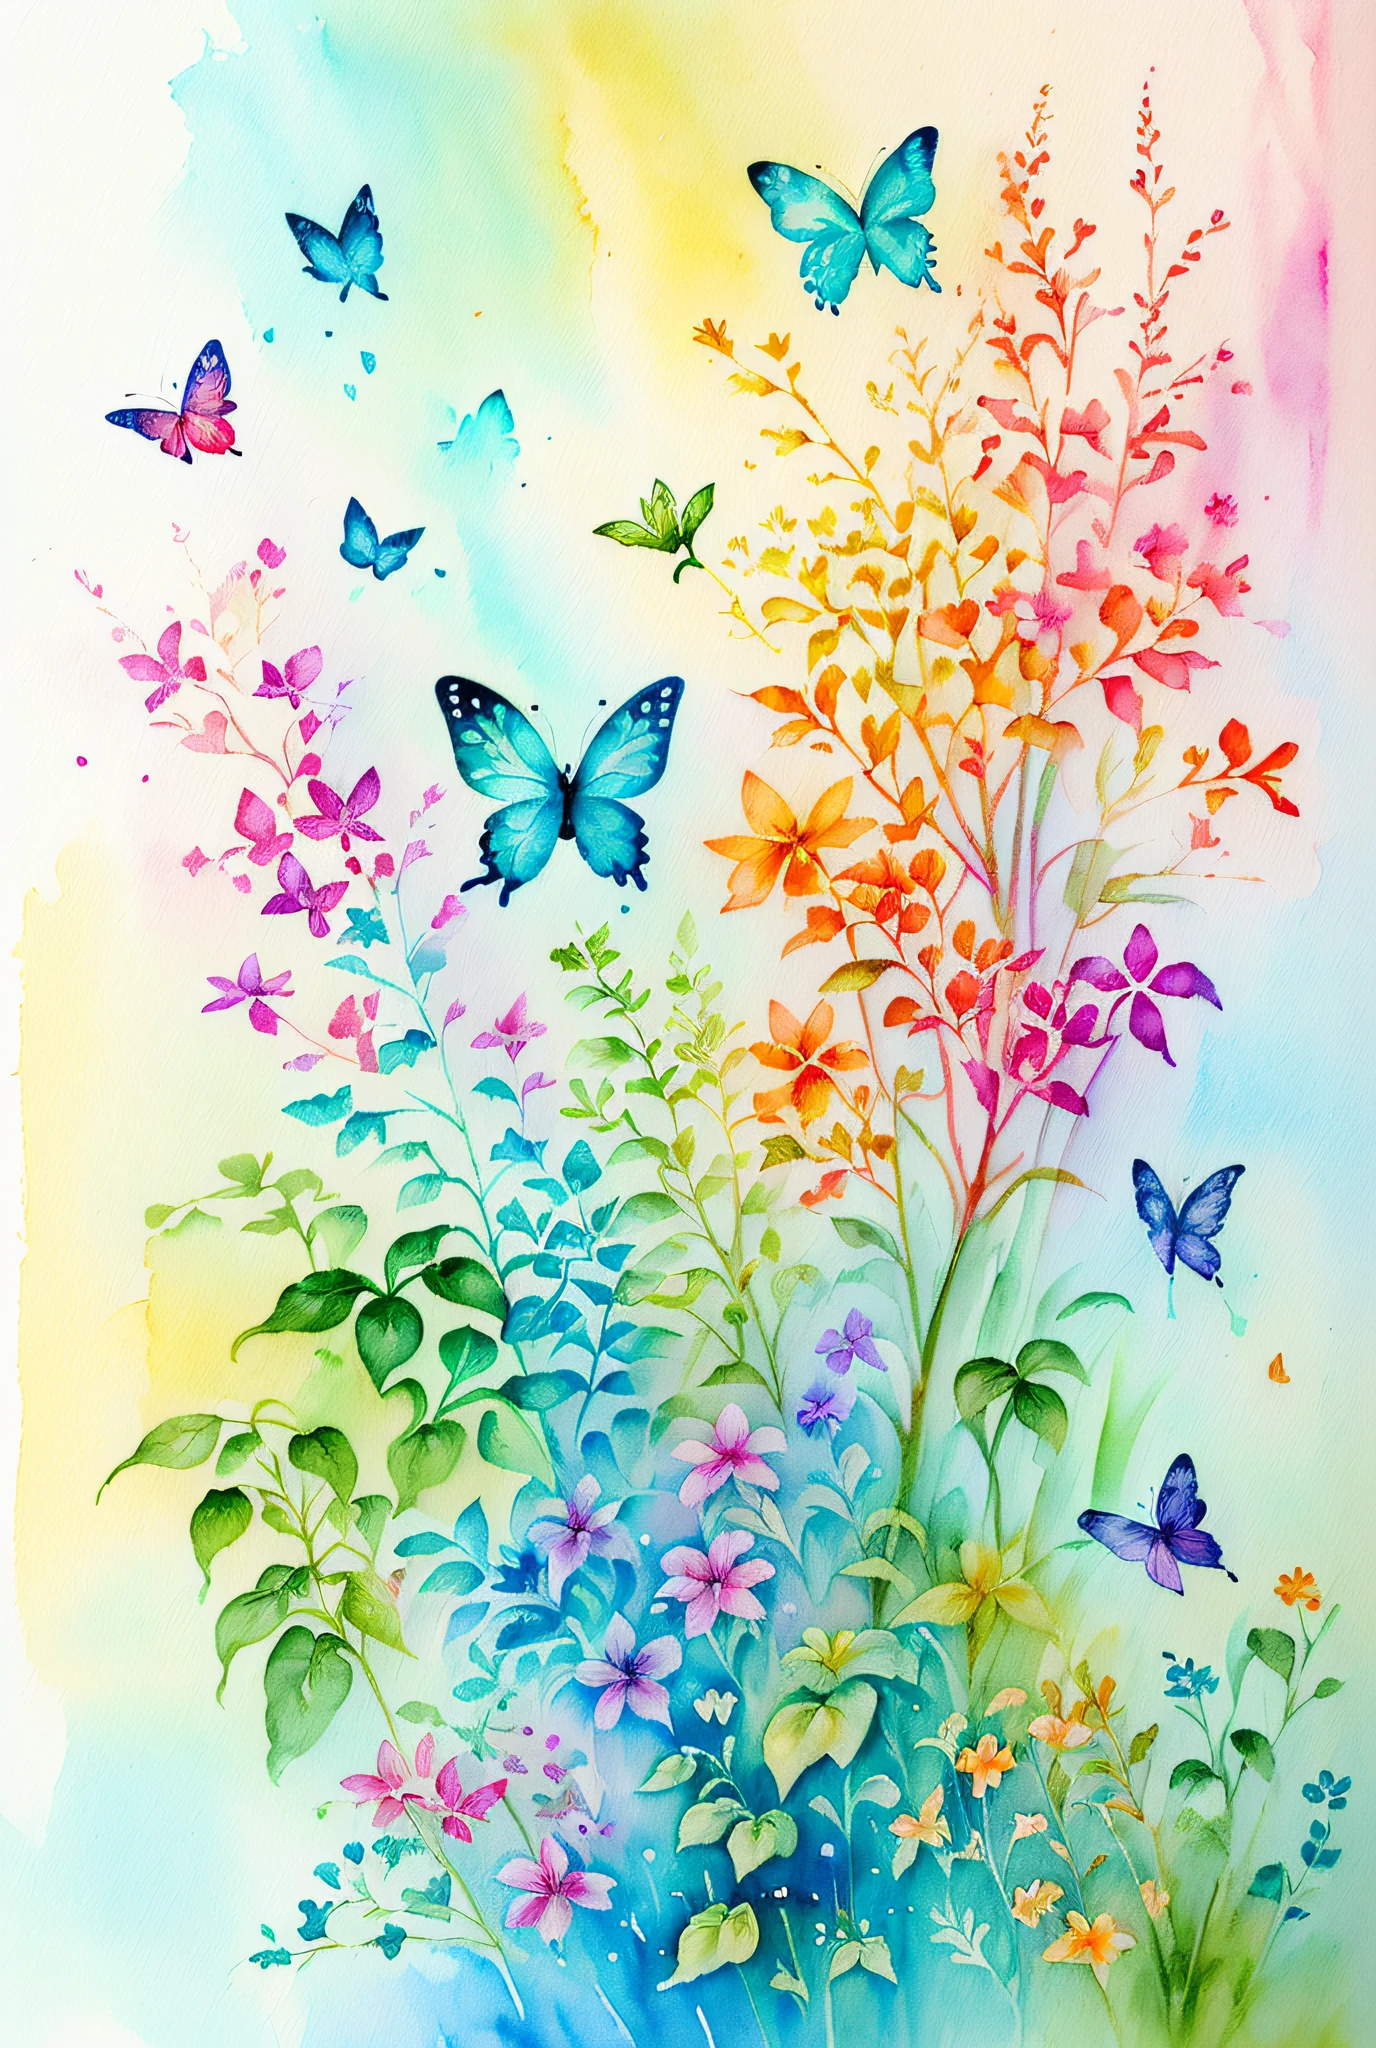 (水彩，一幅画，植物飞来飞去，蝴蝶的和谐，艺术品，一幅美丽的艺术插图，美丽的数码插图，美丽而华丽，美丽的数字绘画，按照角色的风格，绘画风格，蝴蝶，新鲜艺术，精美的数码插画，蝴蝶和阳光、水彩画)